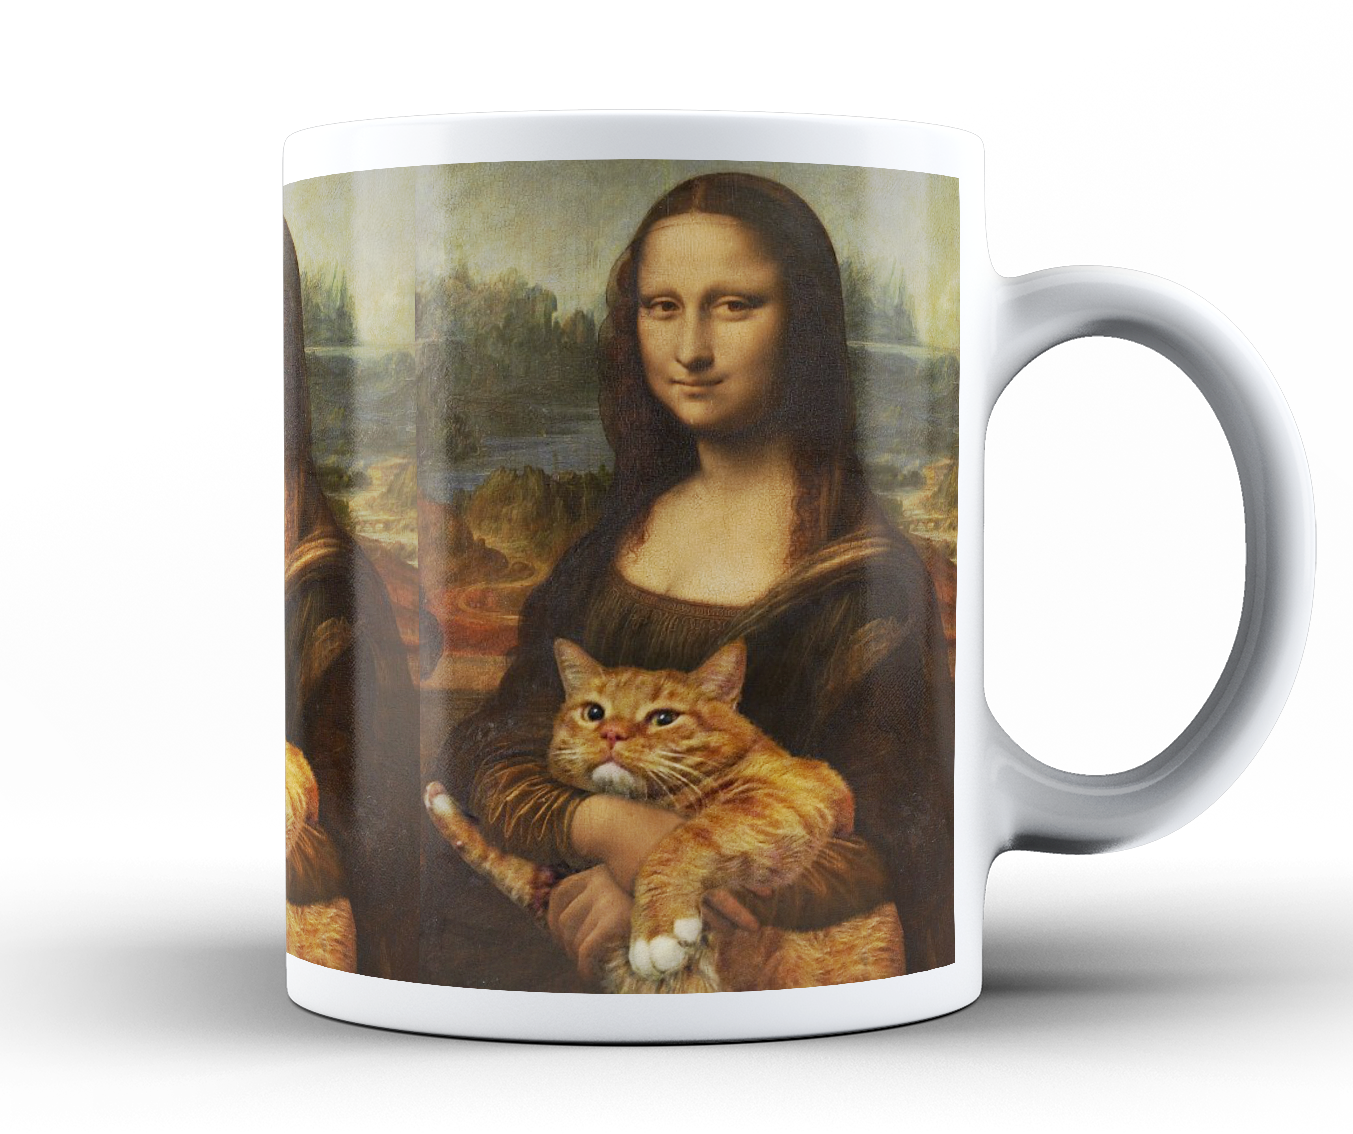 Mona Lisa z kotem - Kubek ceramiczny 